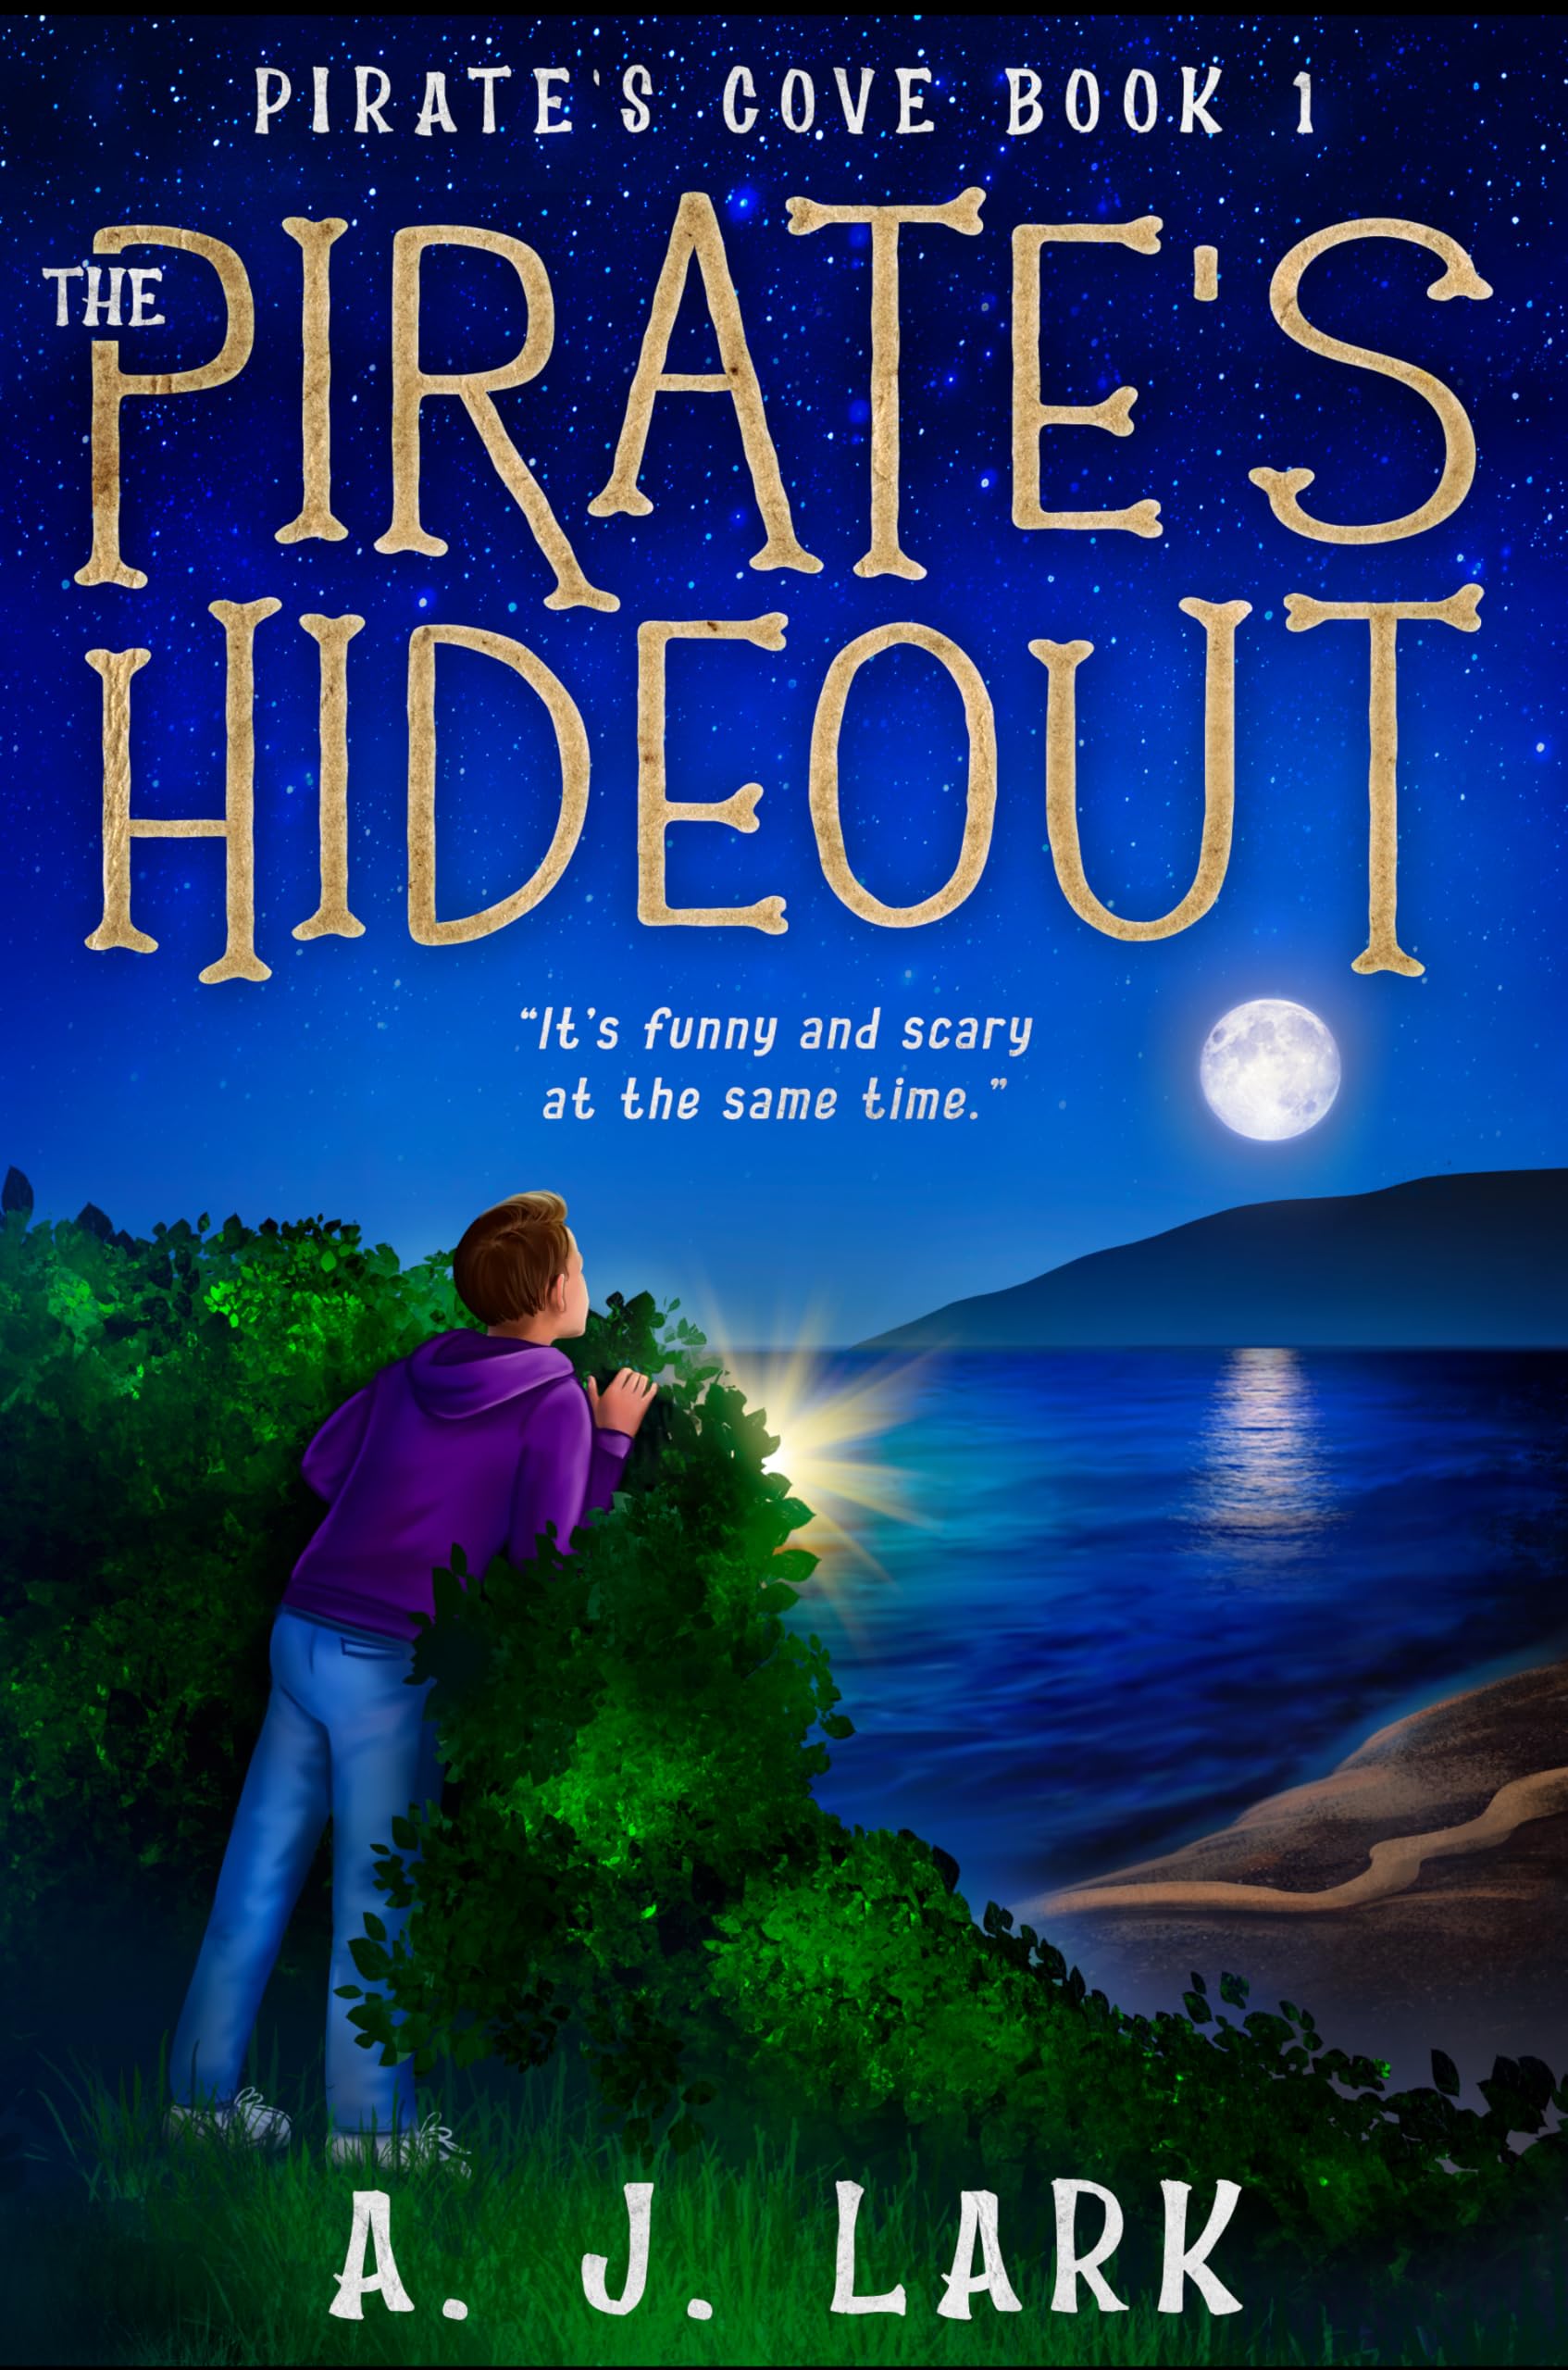 The Pirate's Hideout: Pirate's Cove Book 1